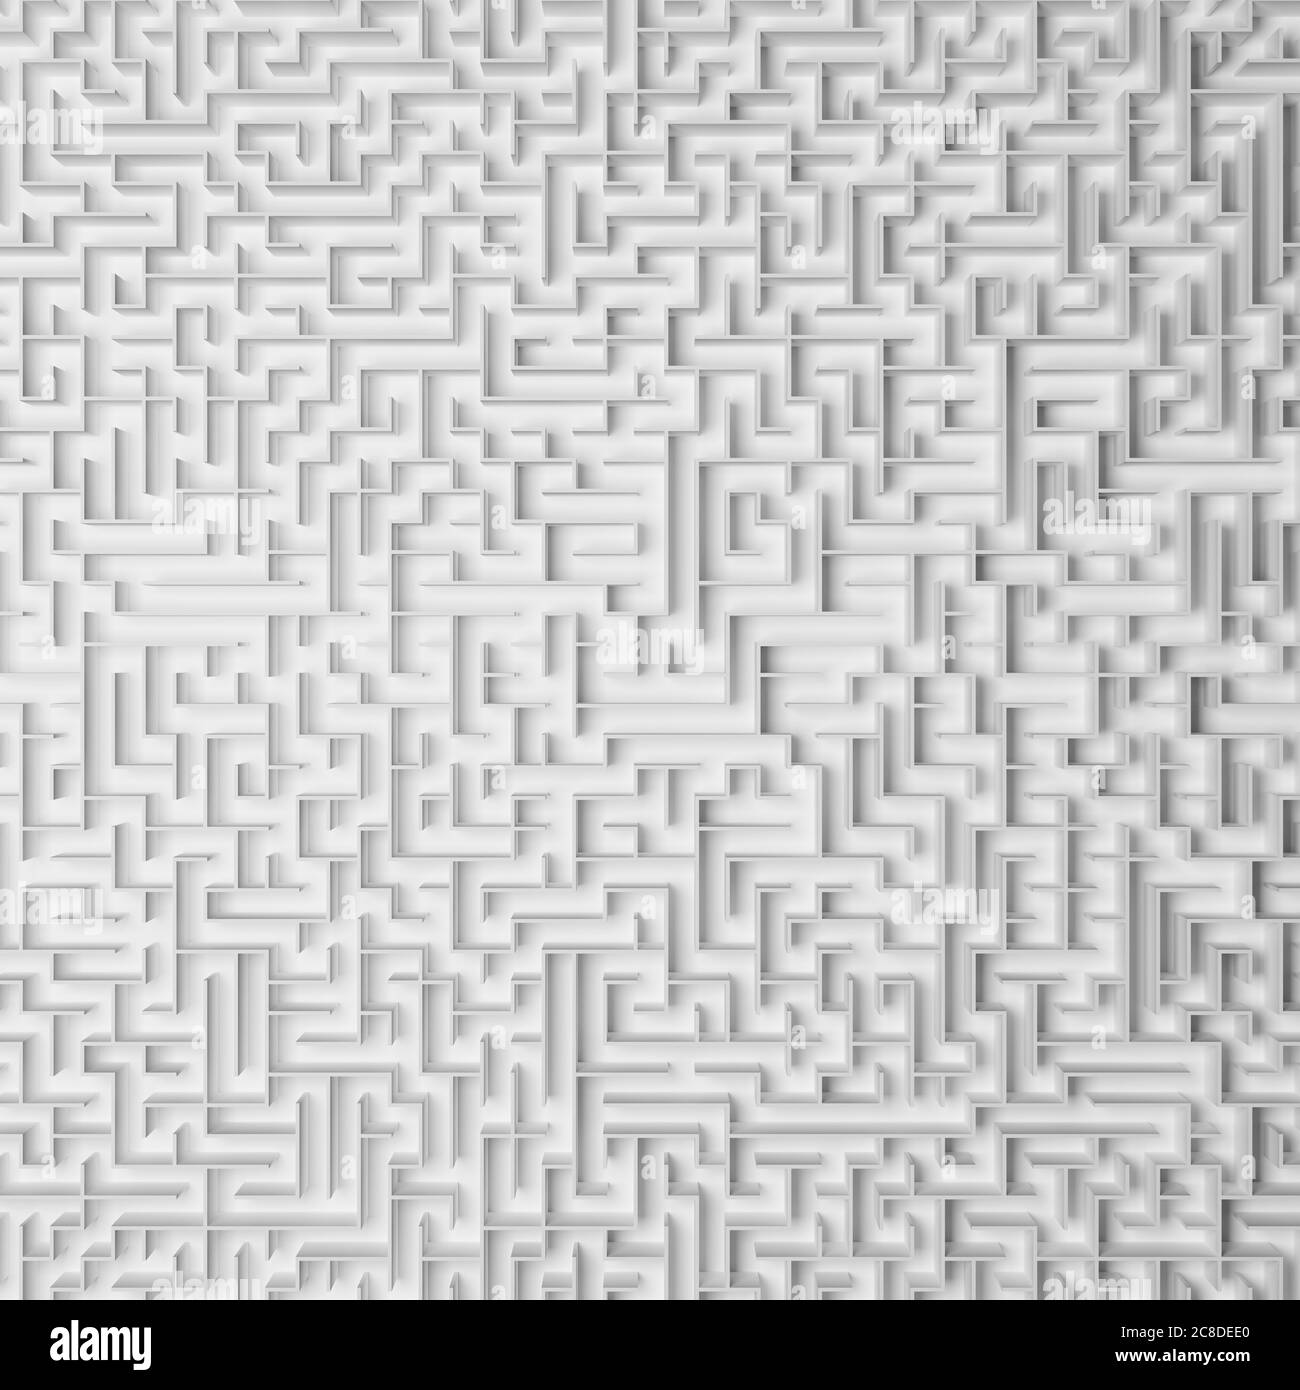 Rendu 3D : image plein format d'un labyrinthe infini avec des murs blancs tournés directement depuis le dessus - concept pour le grand problème, le désespoir Banque D'Images